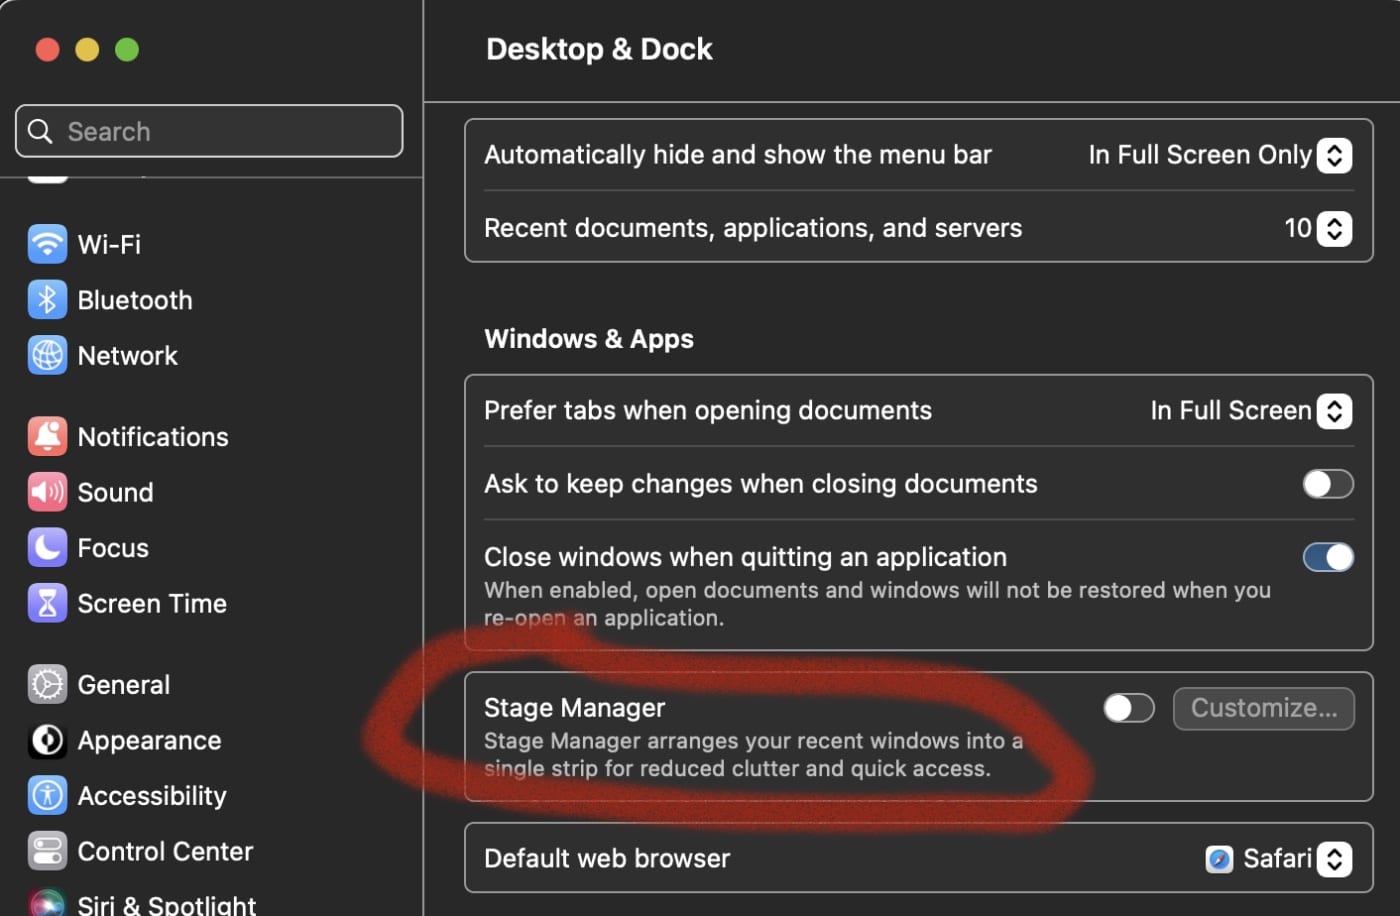 Desktop & Dock > Stage Manager